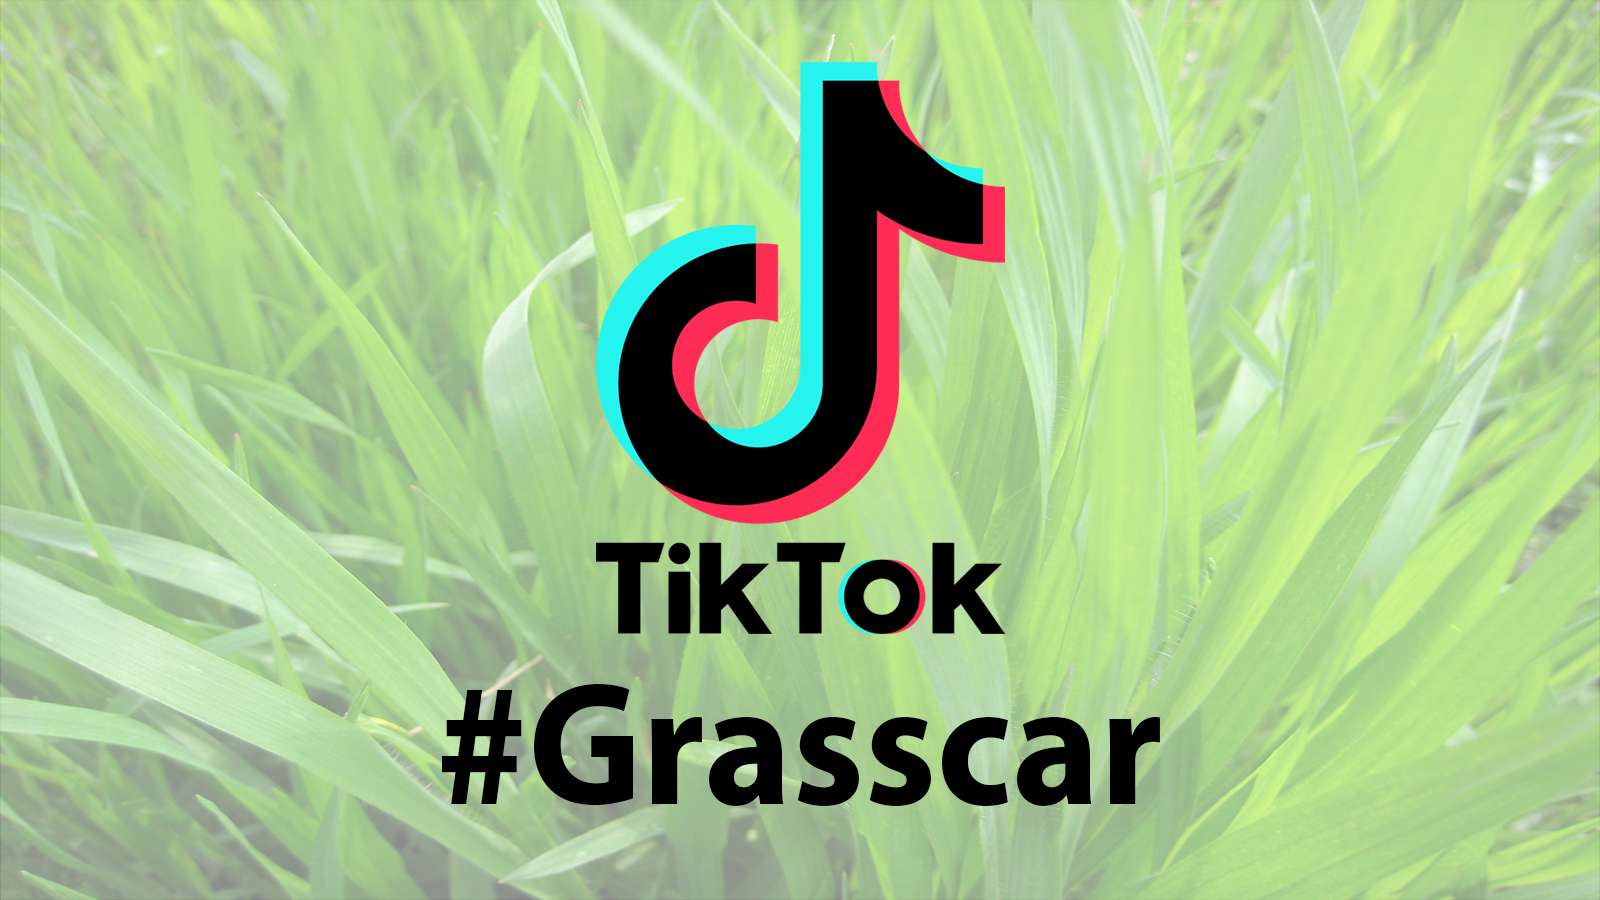 TikTok #Grasscar Challenge